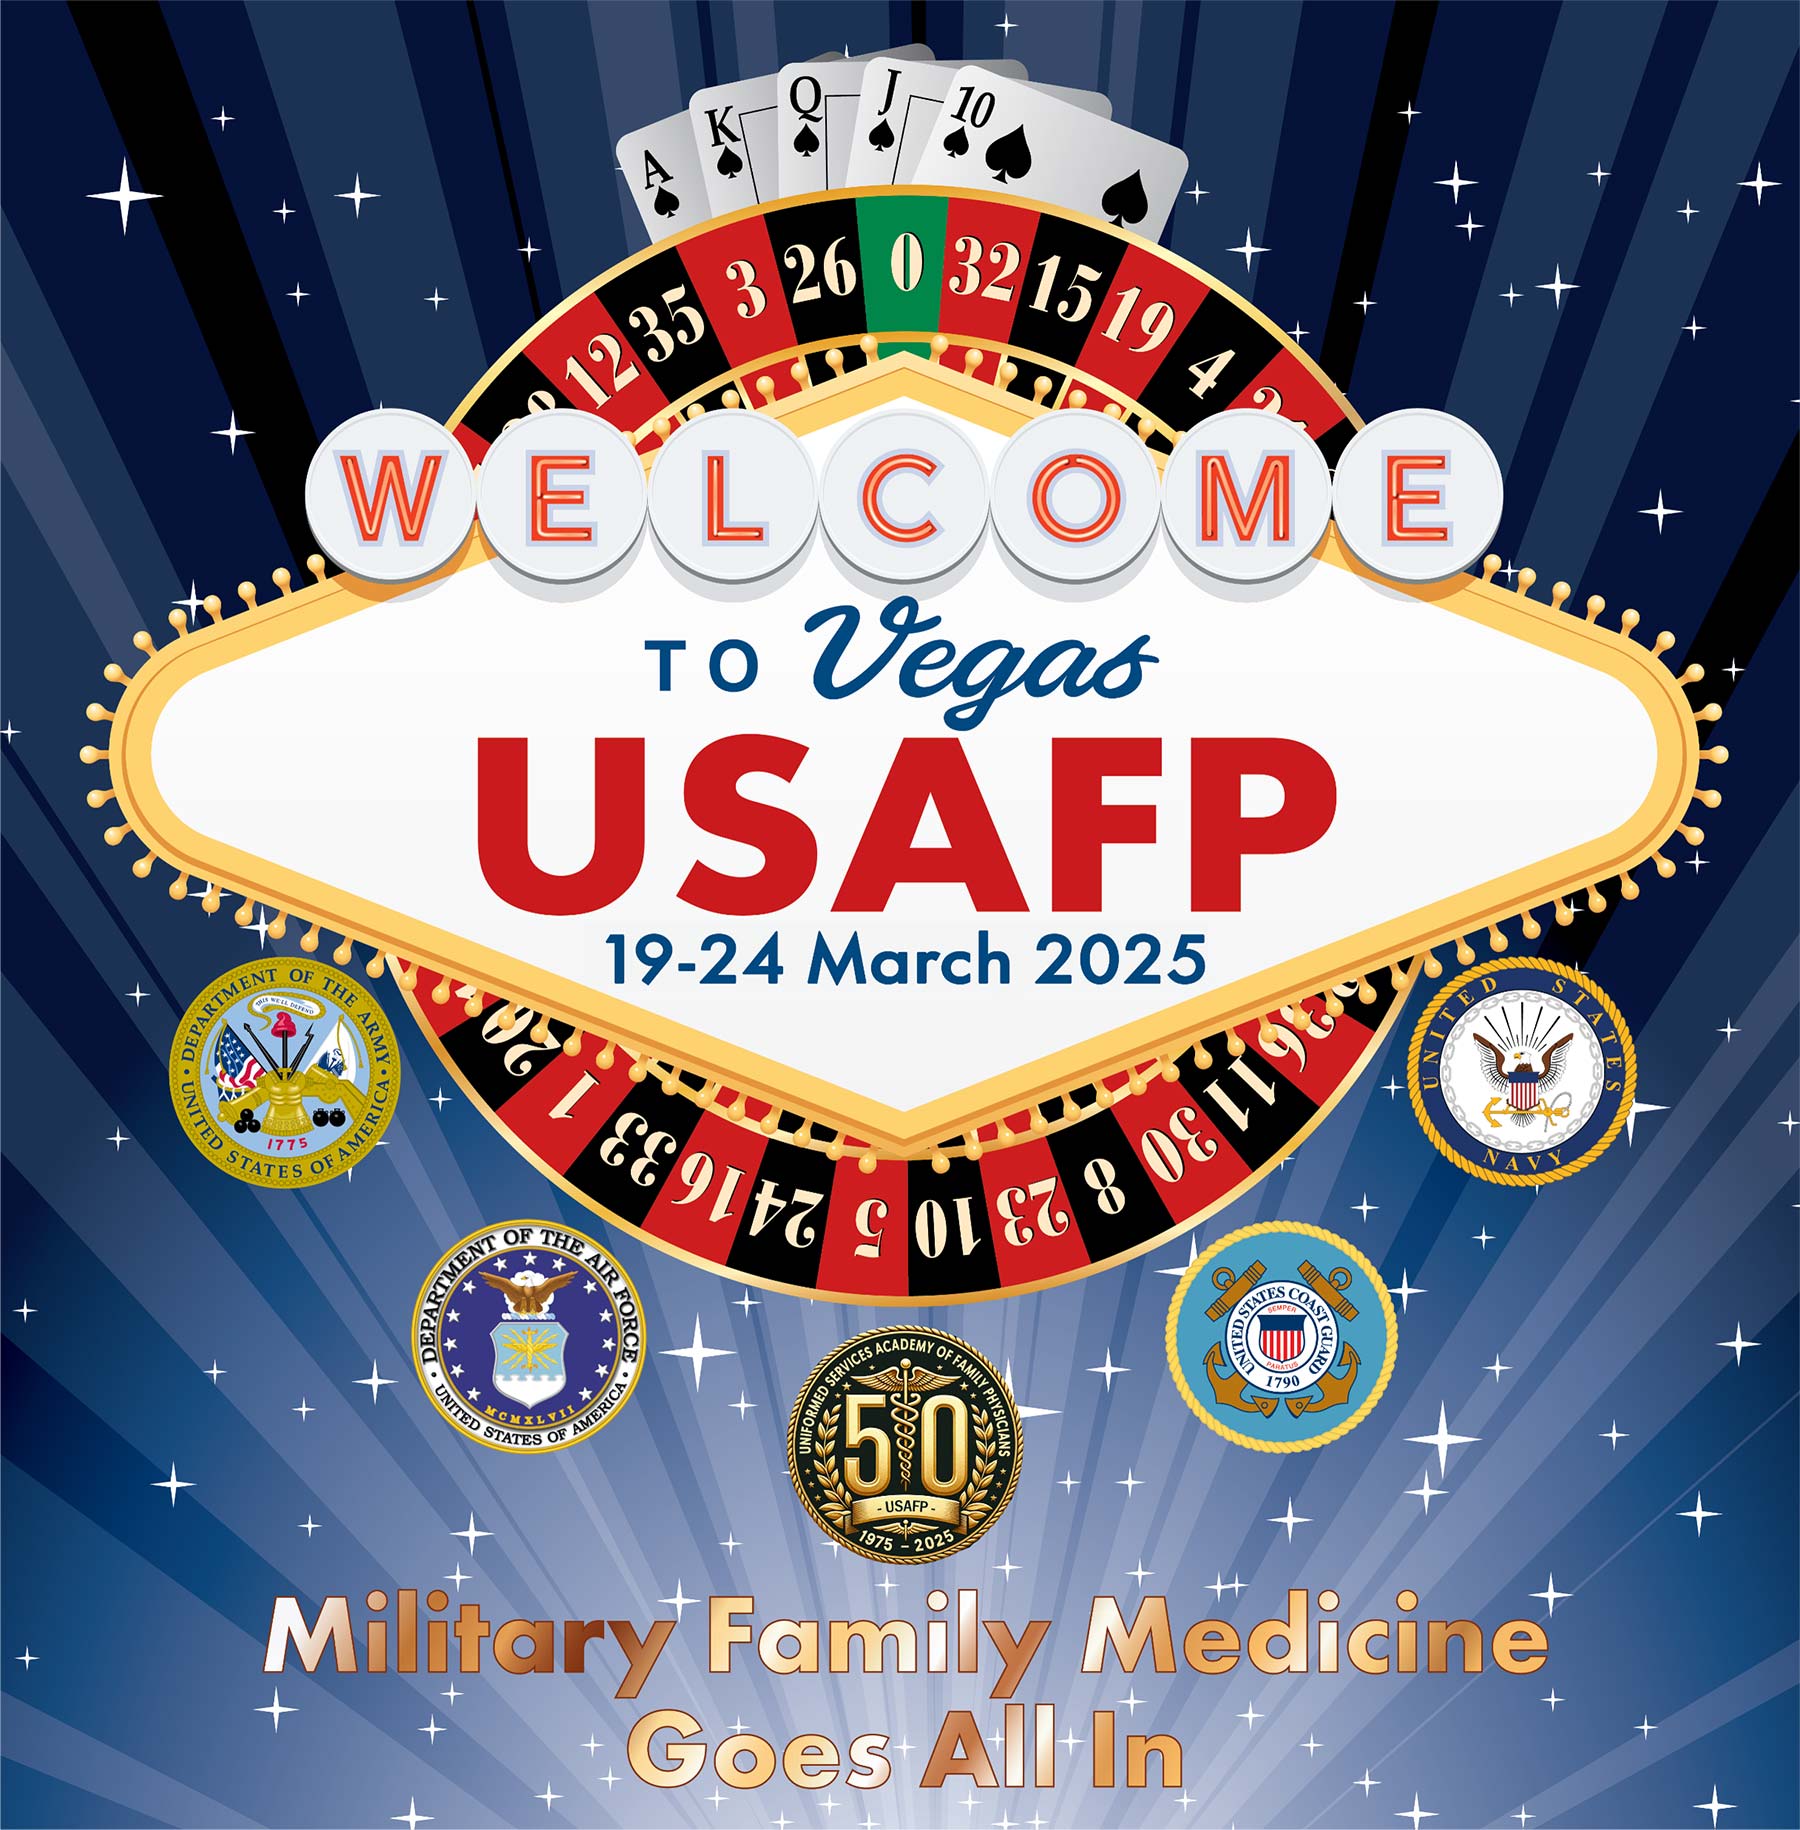 USAFP 2025 in Las Vegas